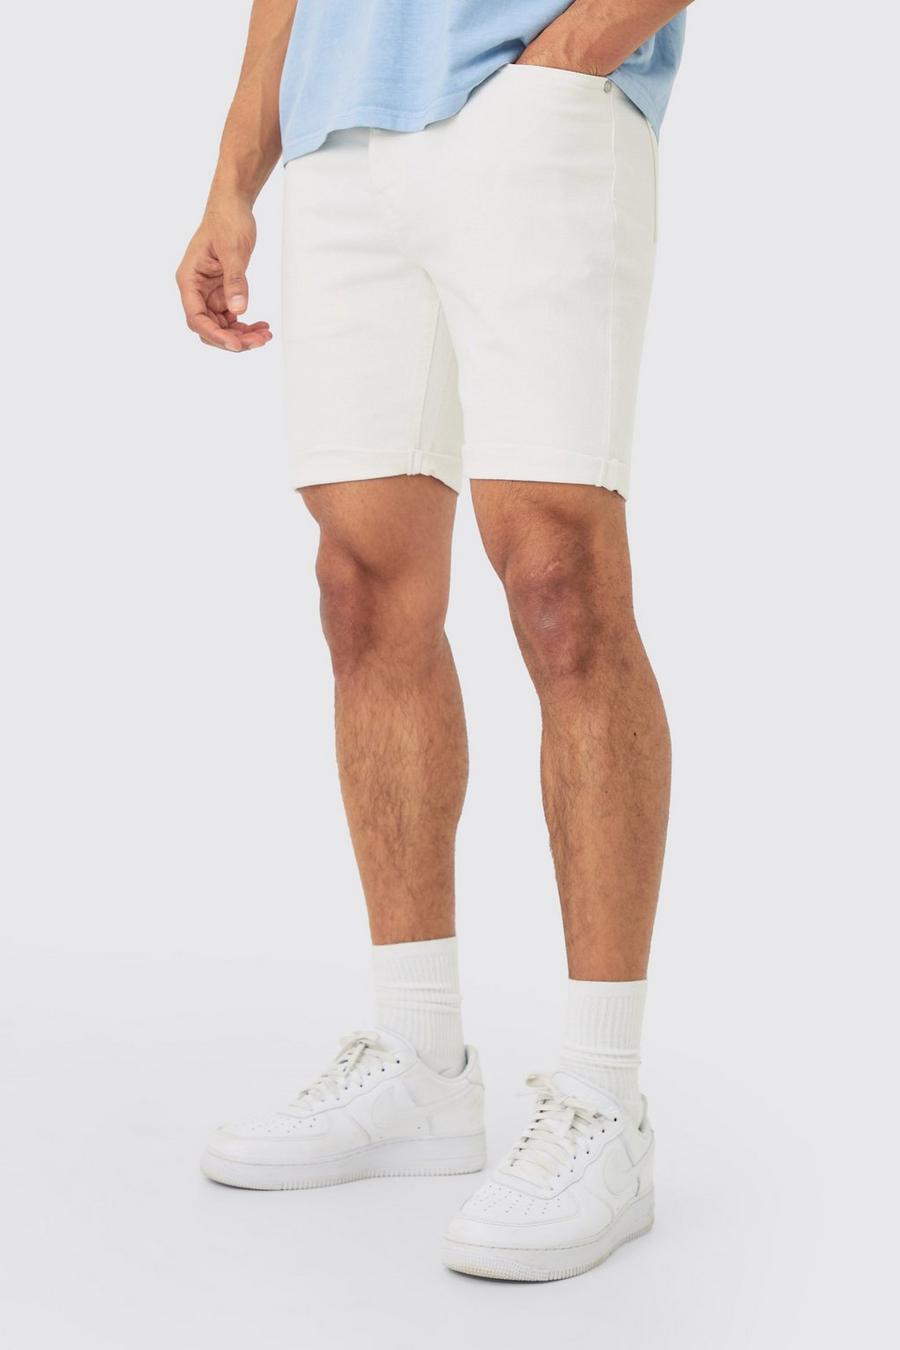 Pantalones cortos vaqueros pitillo elásticos blancos, White